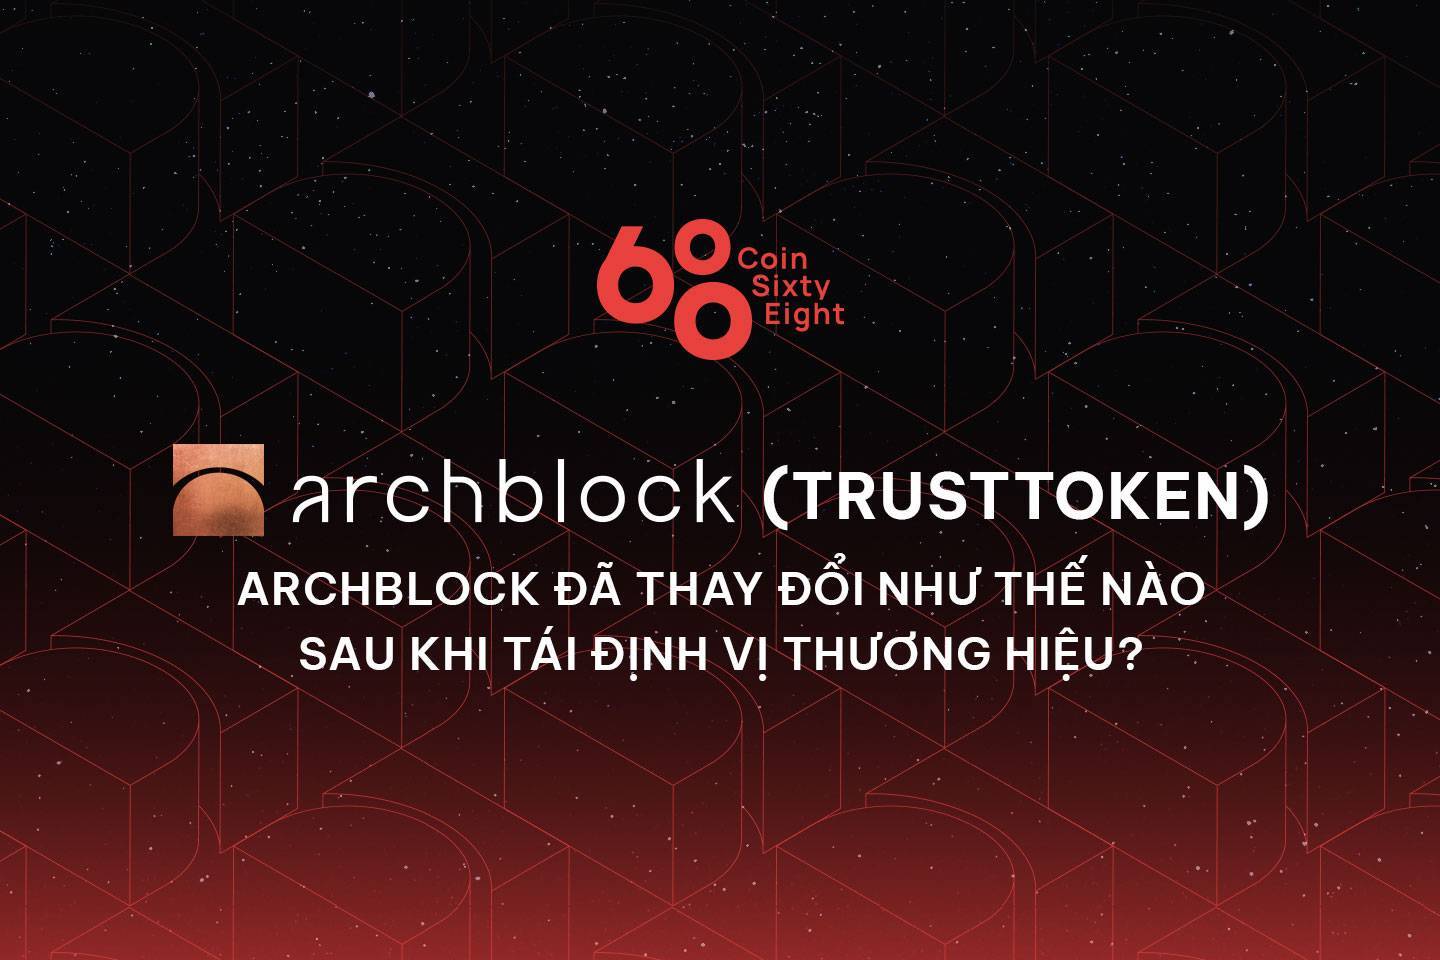 Archblock trusttoken - Archblock Đã Thay Đổi Như Thế Nào Sau Khi Tái Định Vị Thương Hiệu